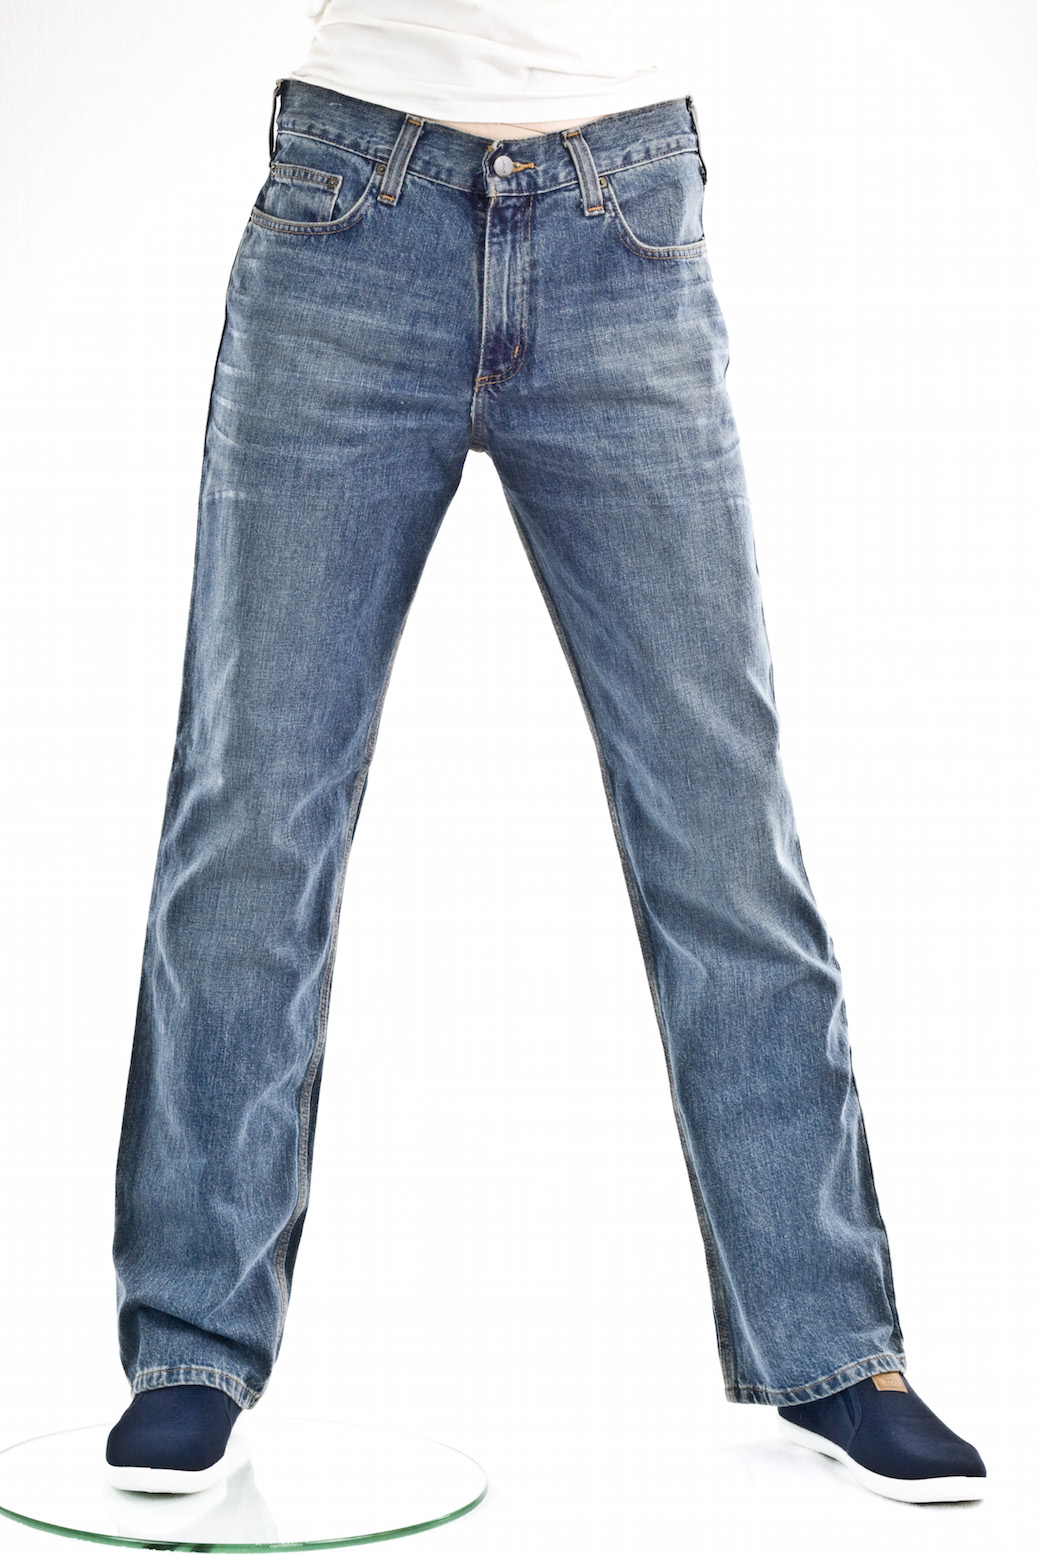 джинсы мужские Carhartt прямые широкие B320 Relax Straight Jean